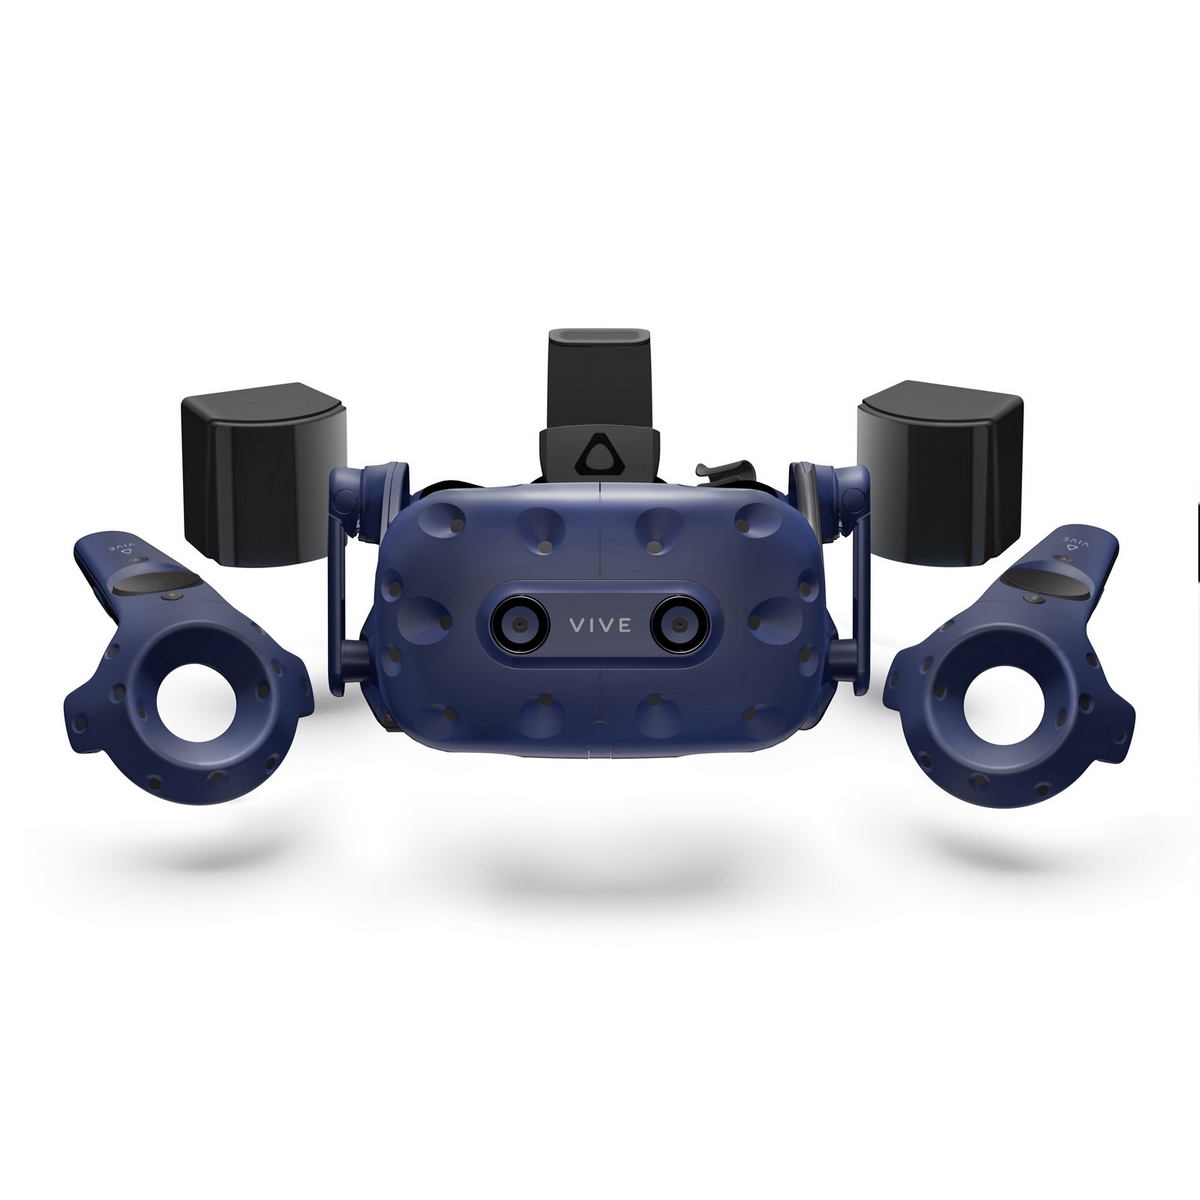 HTC VIVE Pro Virtual Reality System Bundle with HTC VIVE Virtual Reality System Tracker 2018 